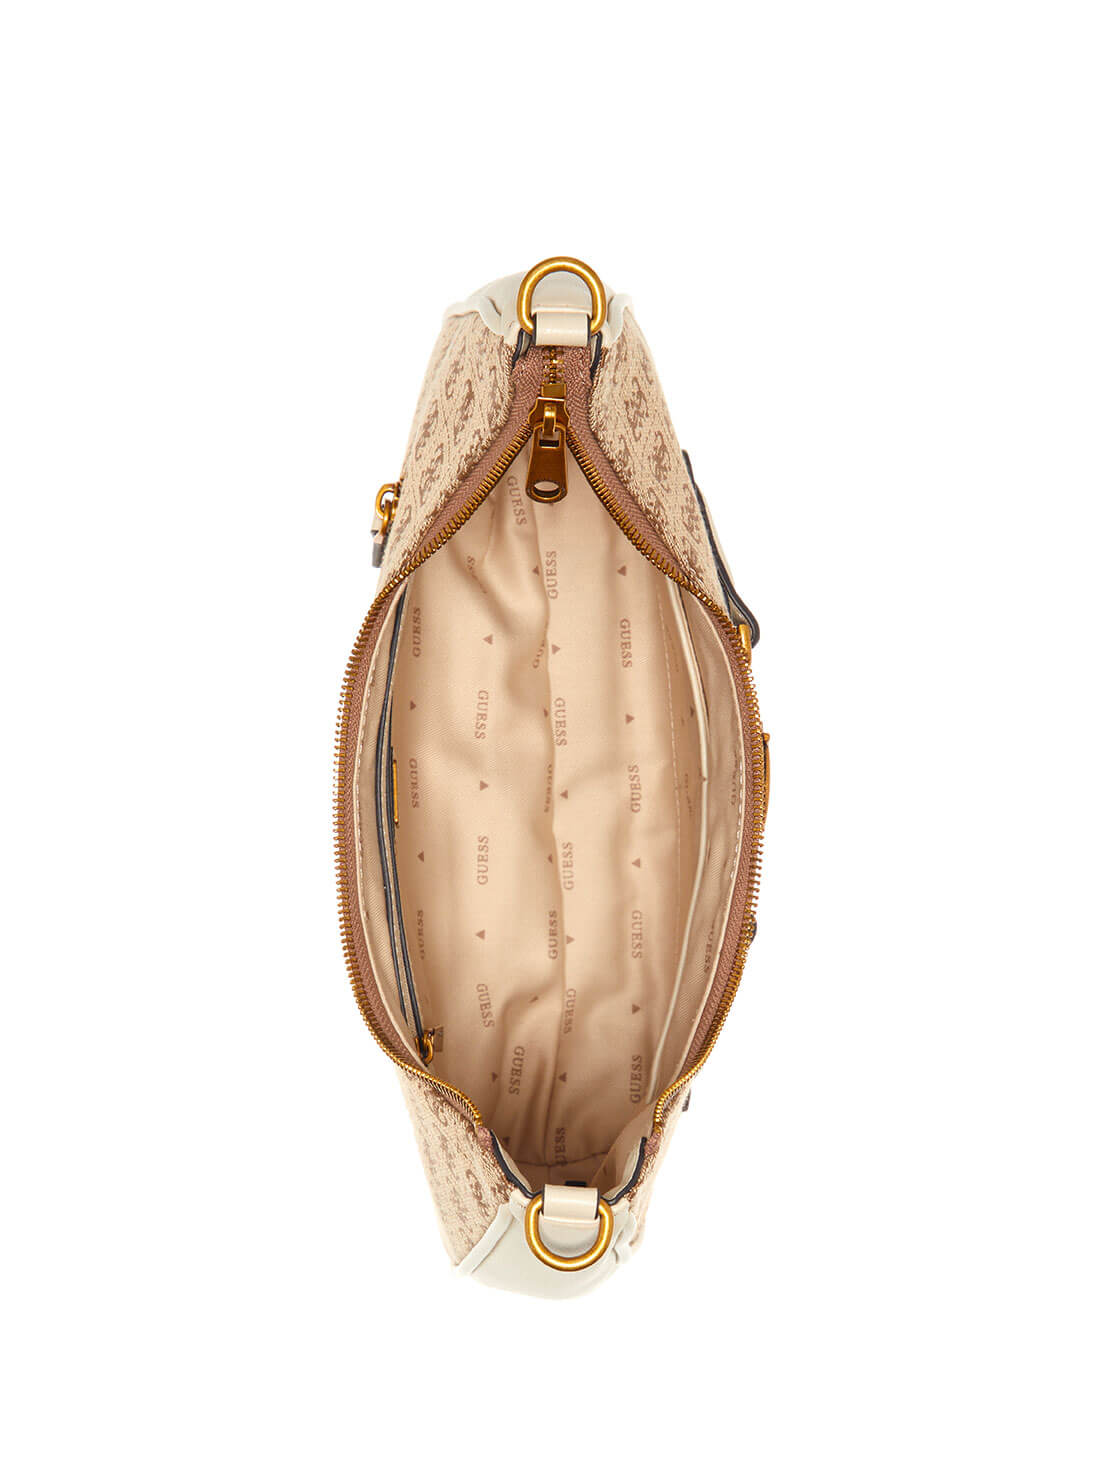 Stone Logo Aviana Hobo Shoulder Bag | GUESS Women's Handbags | inside view